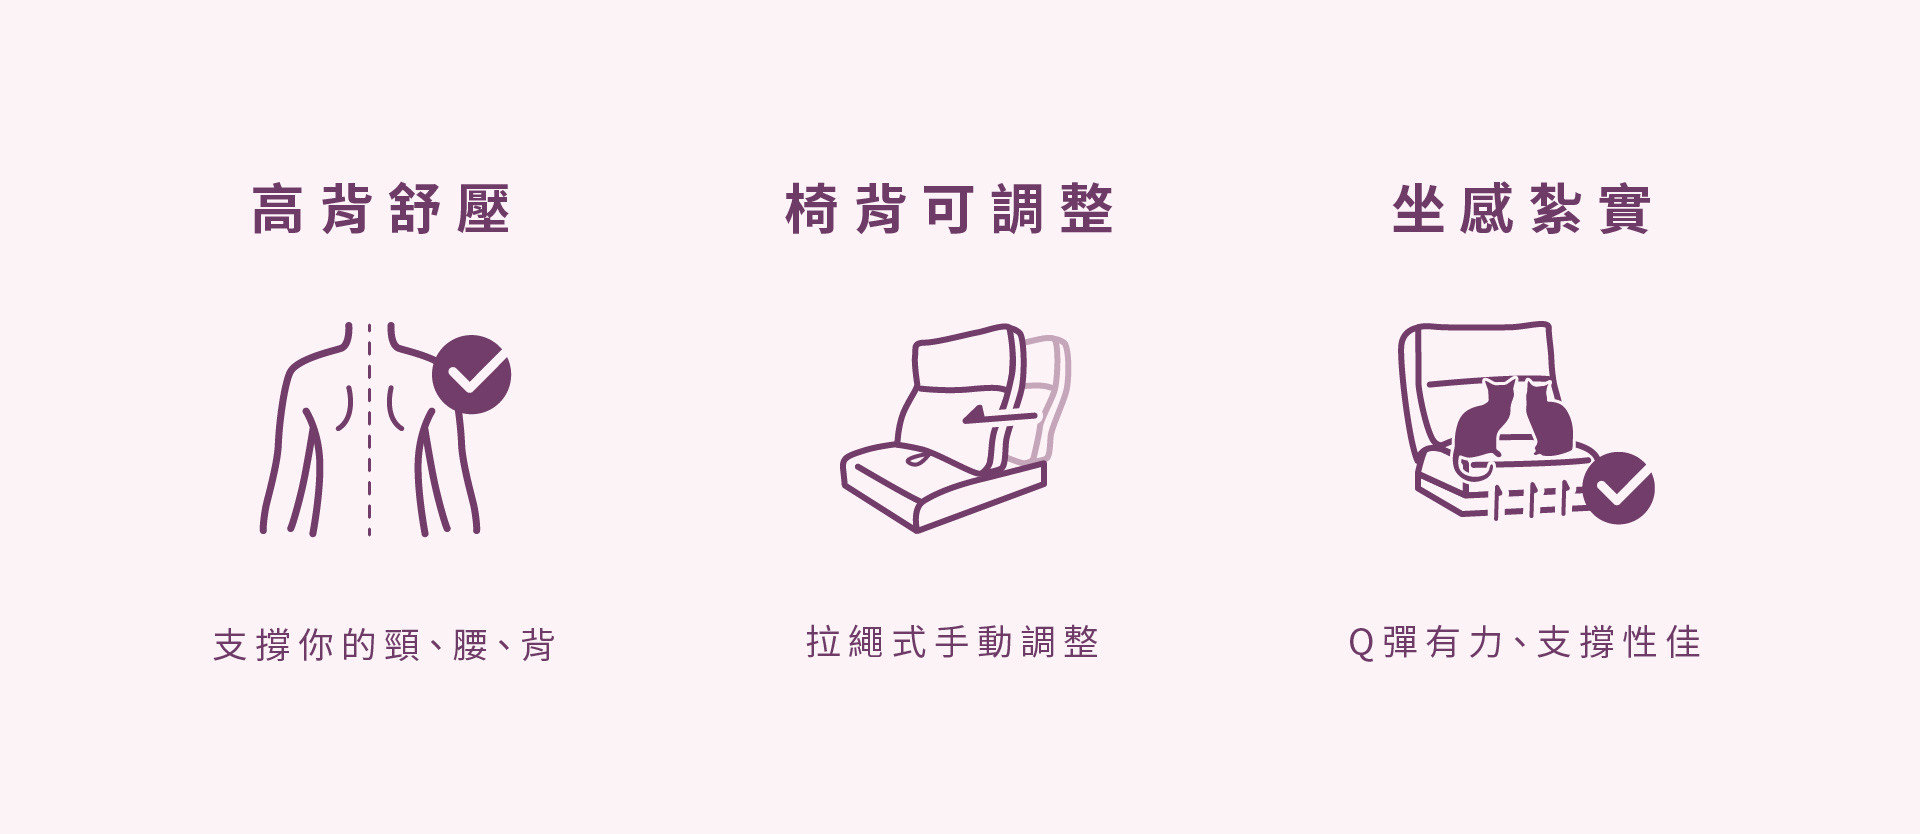 波妞沙發商品特色：高背支撐、拉繩式椅背、坐感扎實